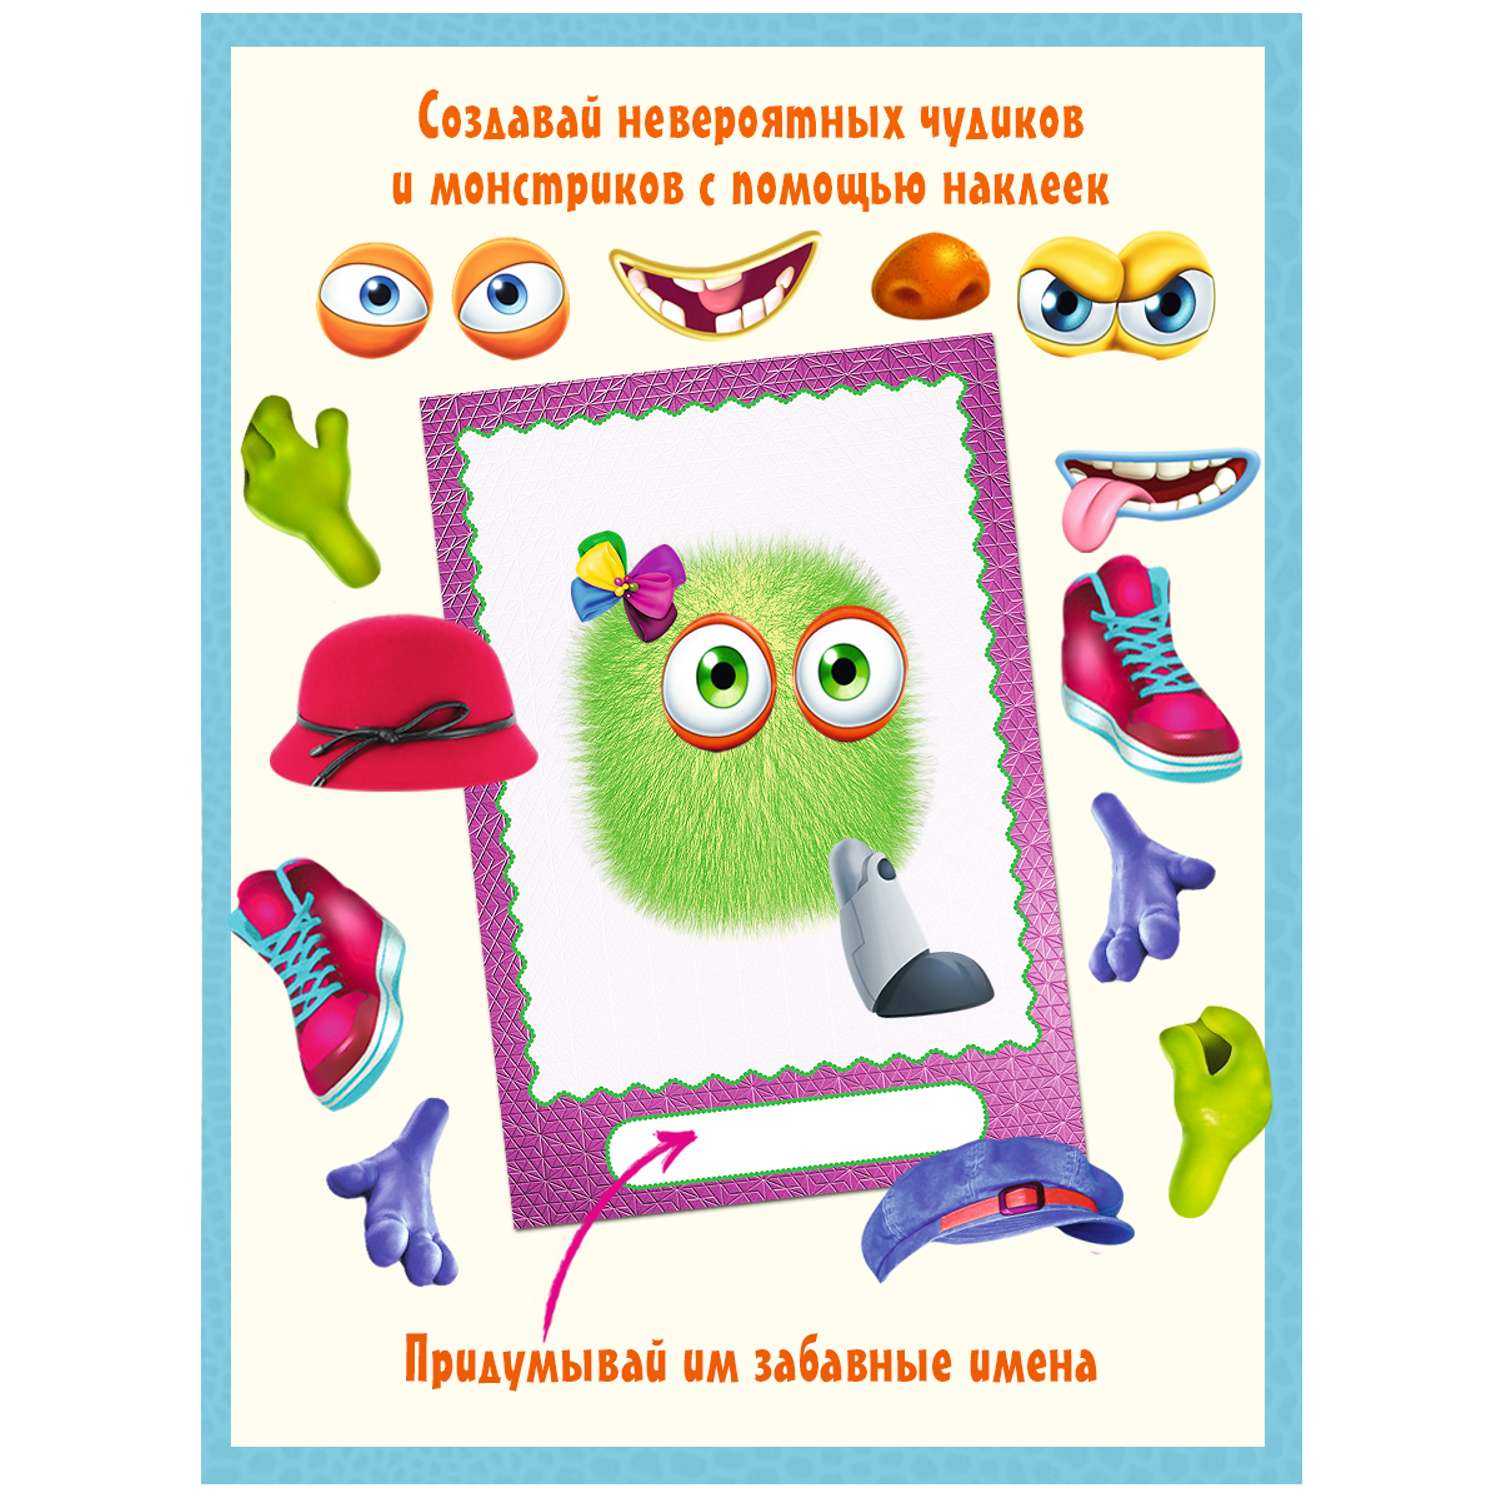 Книги с наклейками Фламинго развивающие для детей и малышей Сделай своего Чудика Монстрика Чудо-зверя 4 книги - фото 2